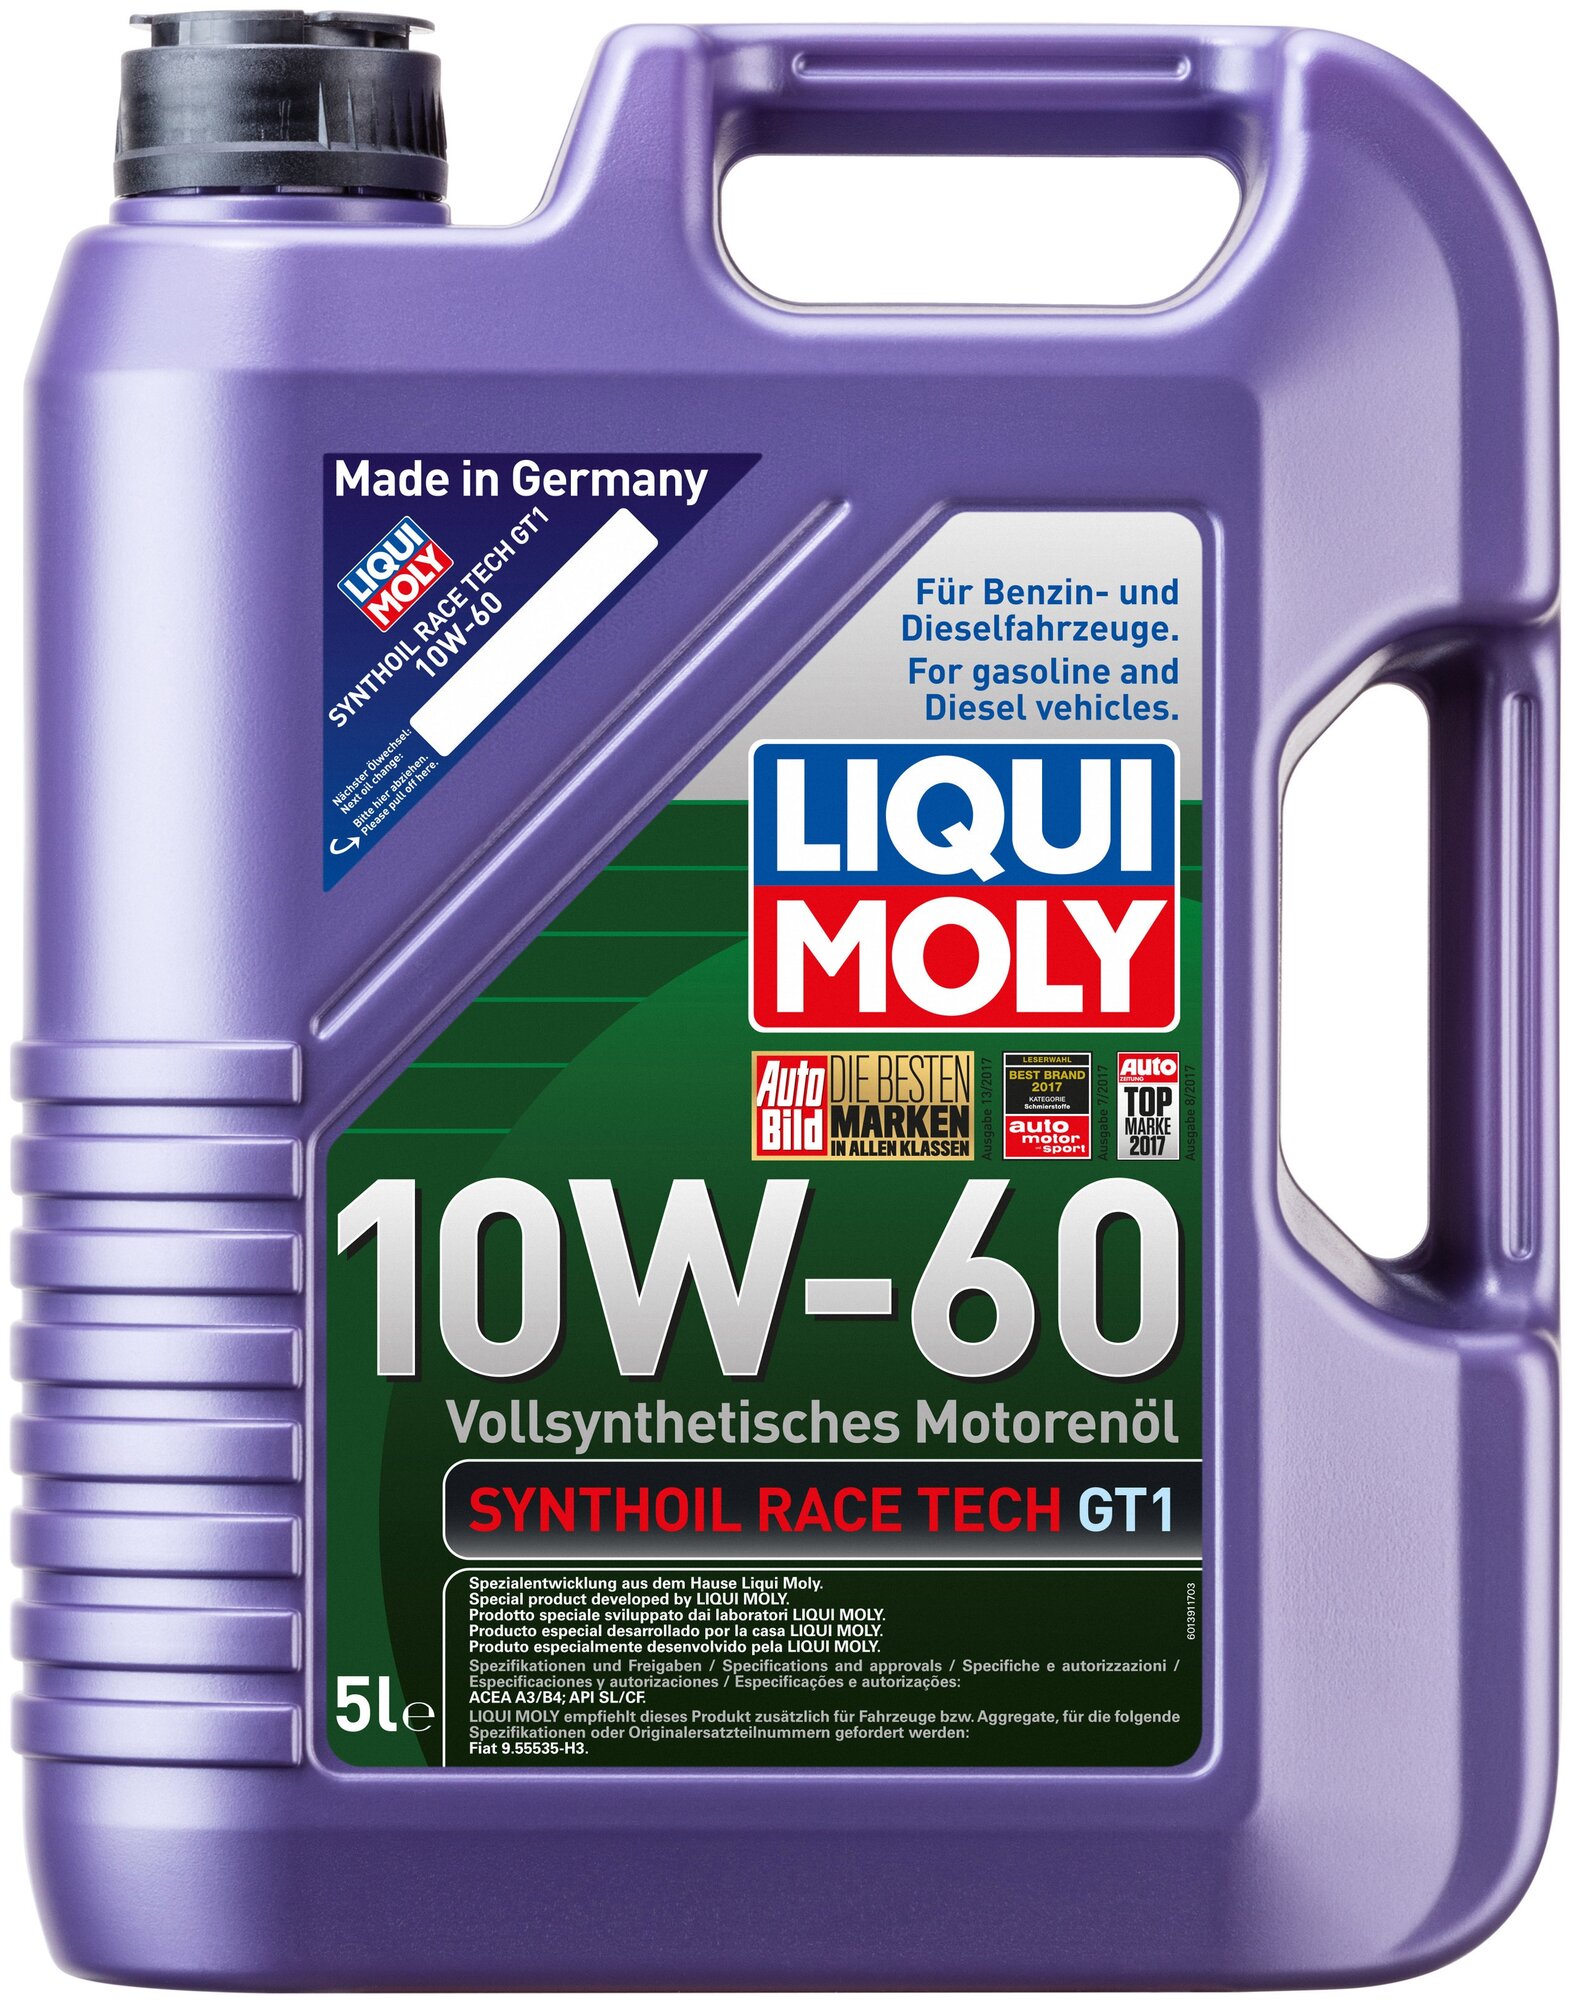 Синтетическое моторное масло LIQUI MOLY Synthoil Race Tech GT1 10W-60